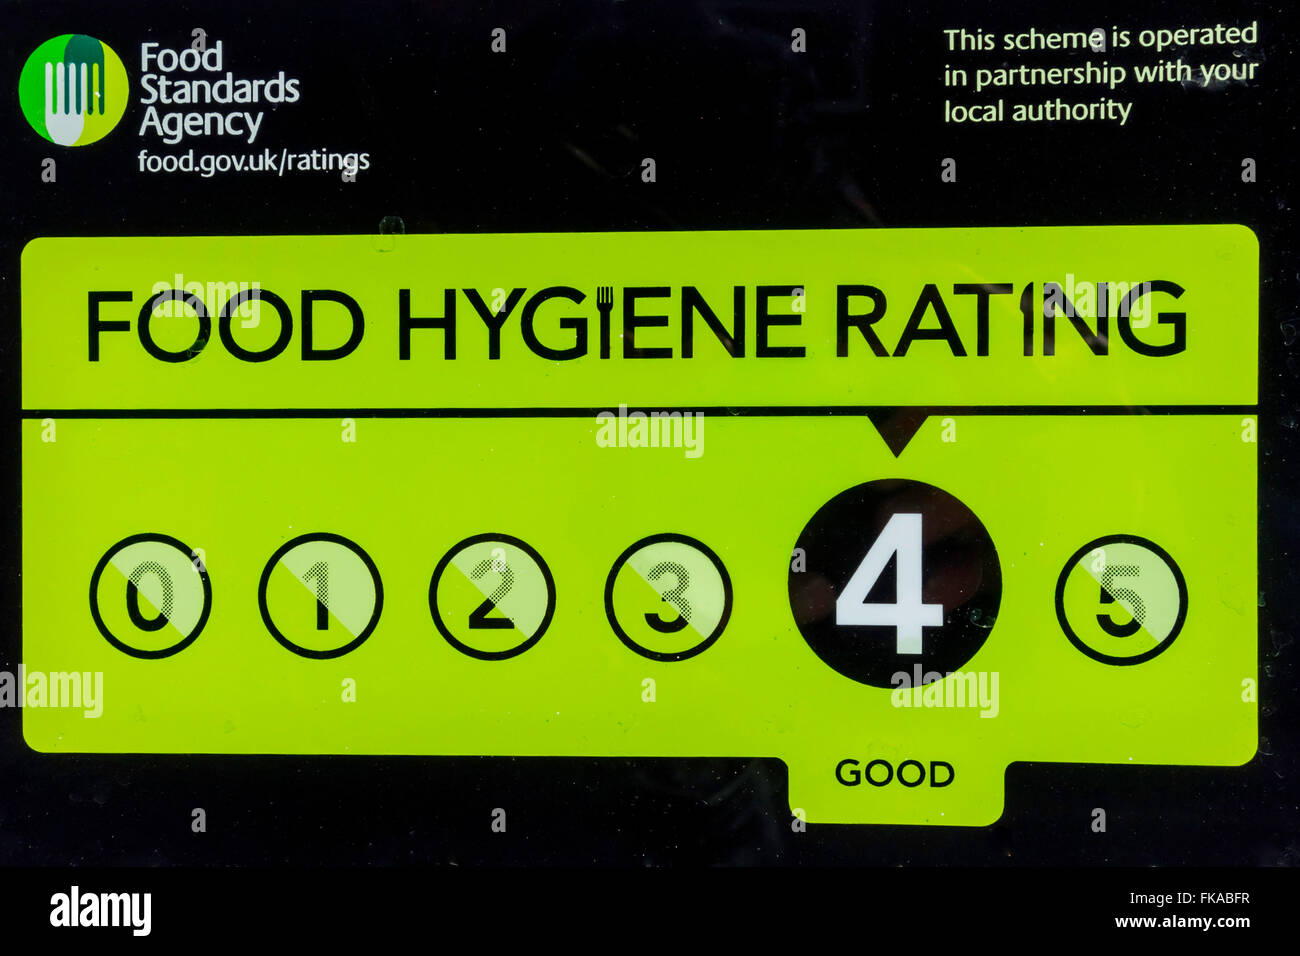 Agenzia per le norme alimentari avviso di incisione su una finestra di café alto livello di rating 4 buone Foto Stock